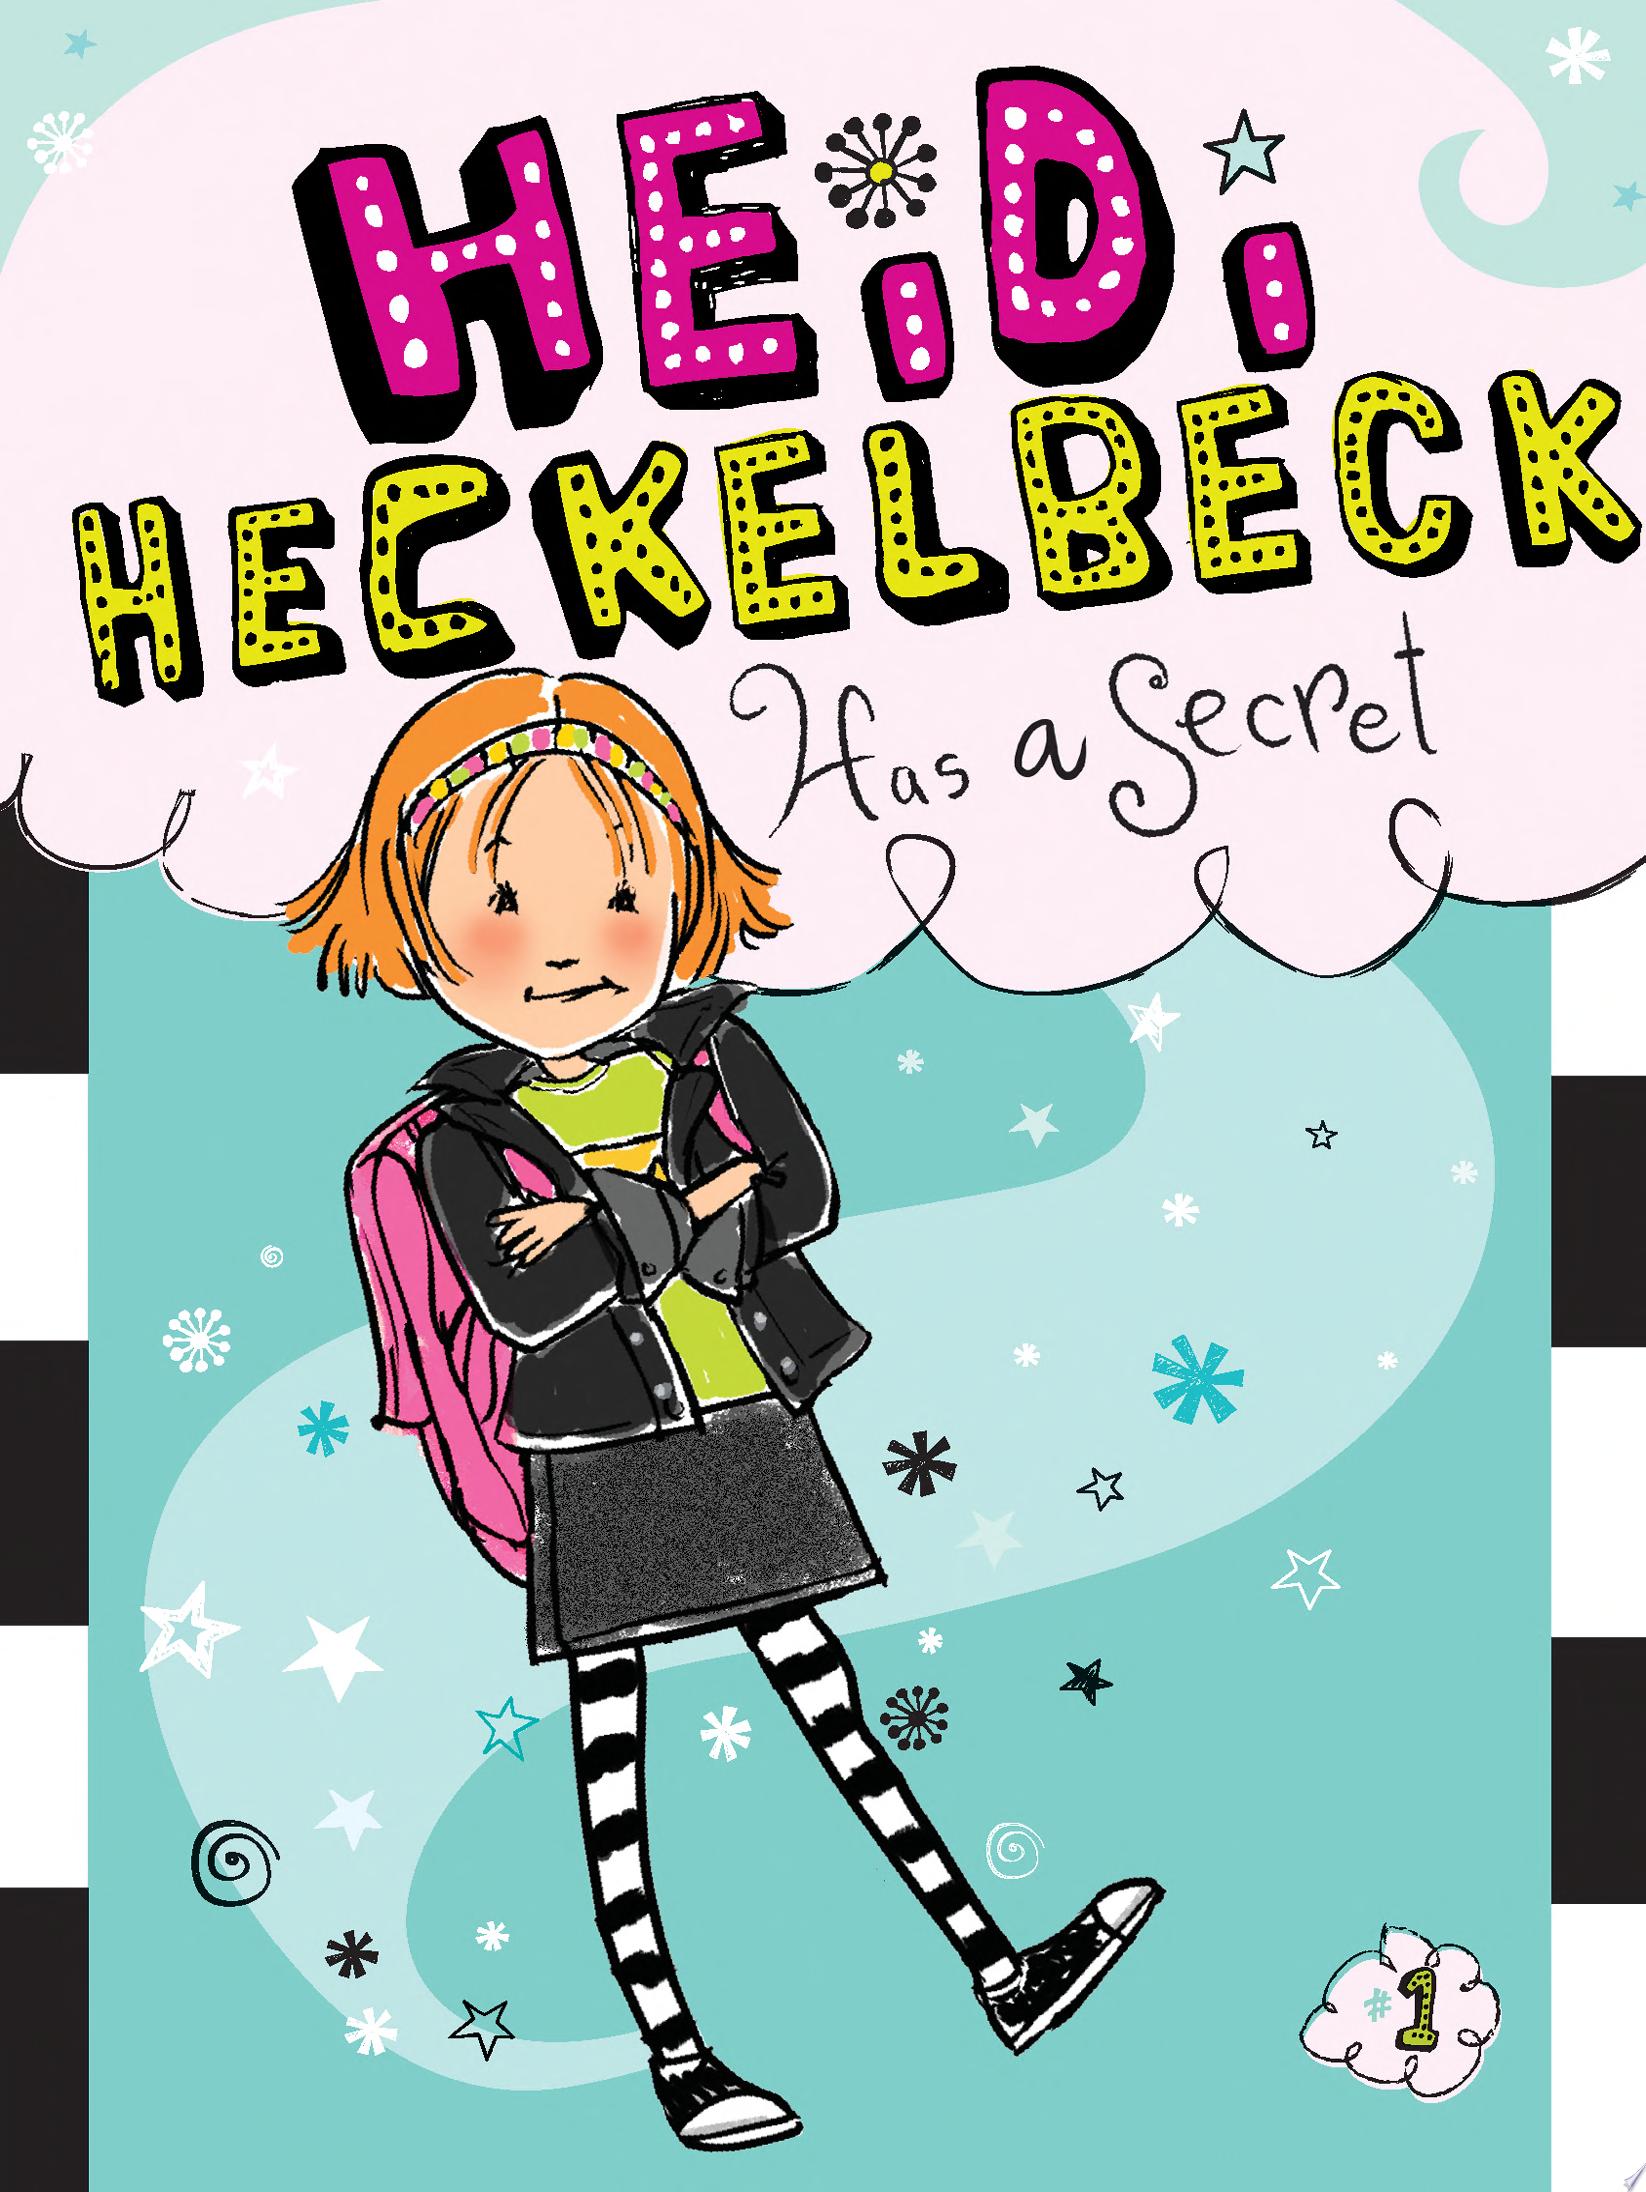 Image for "Heidi Heckelbeck Has a Secret"